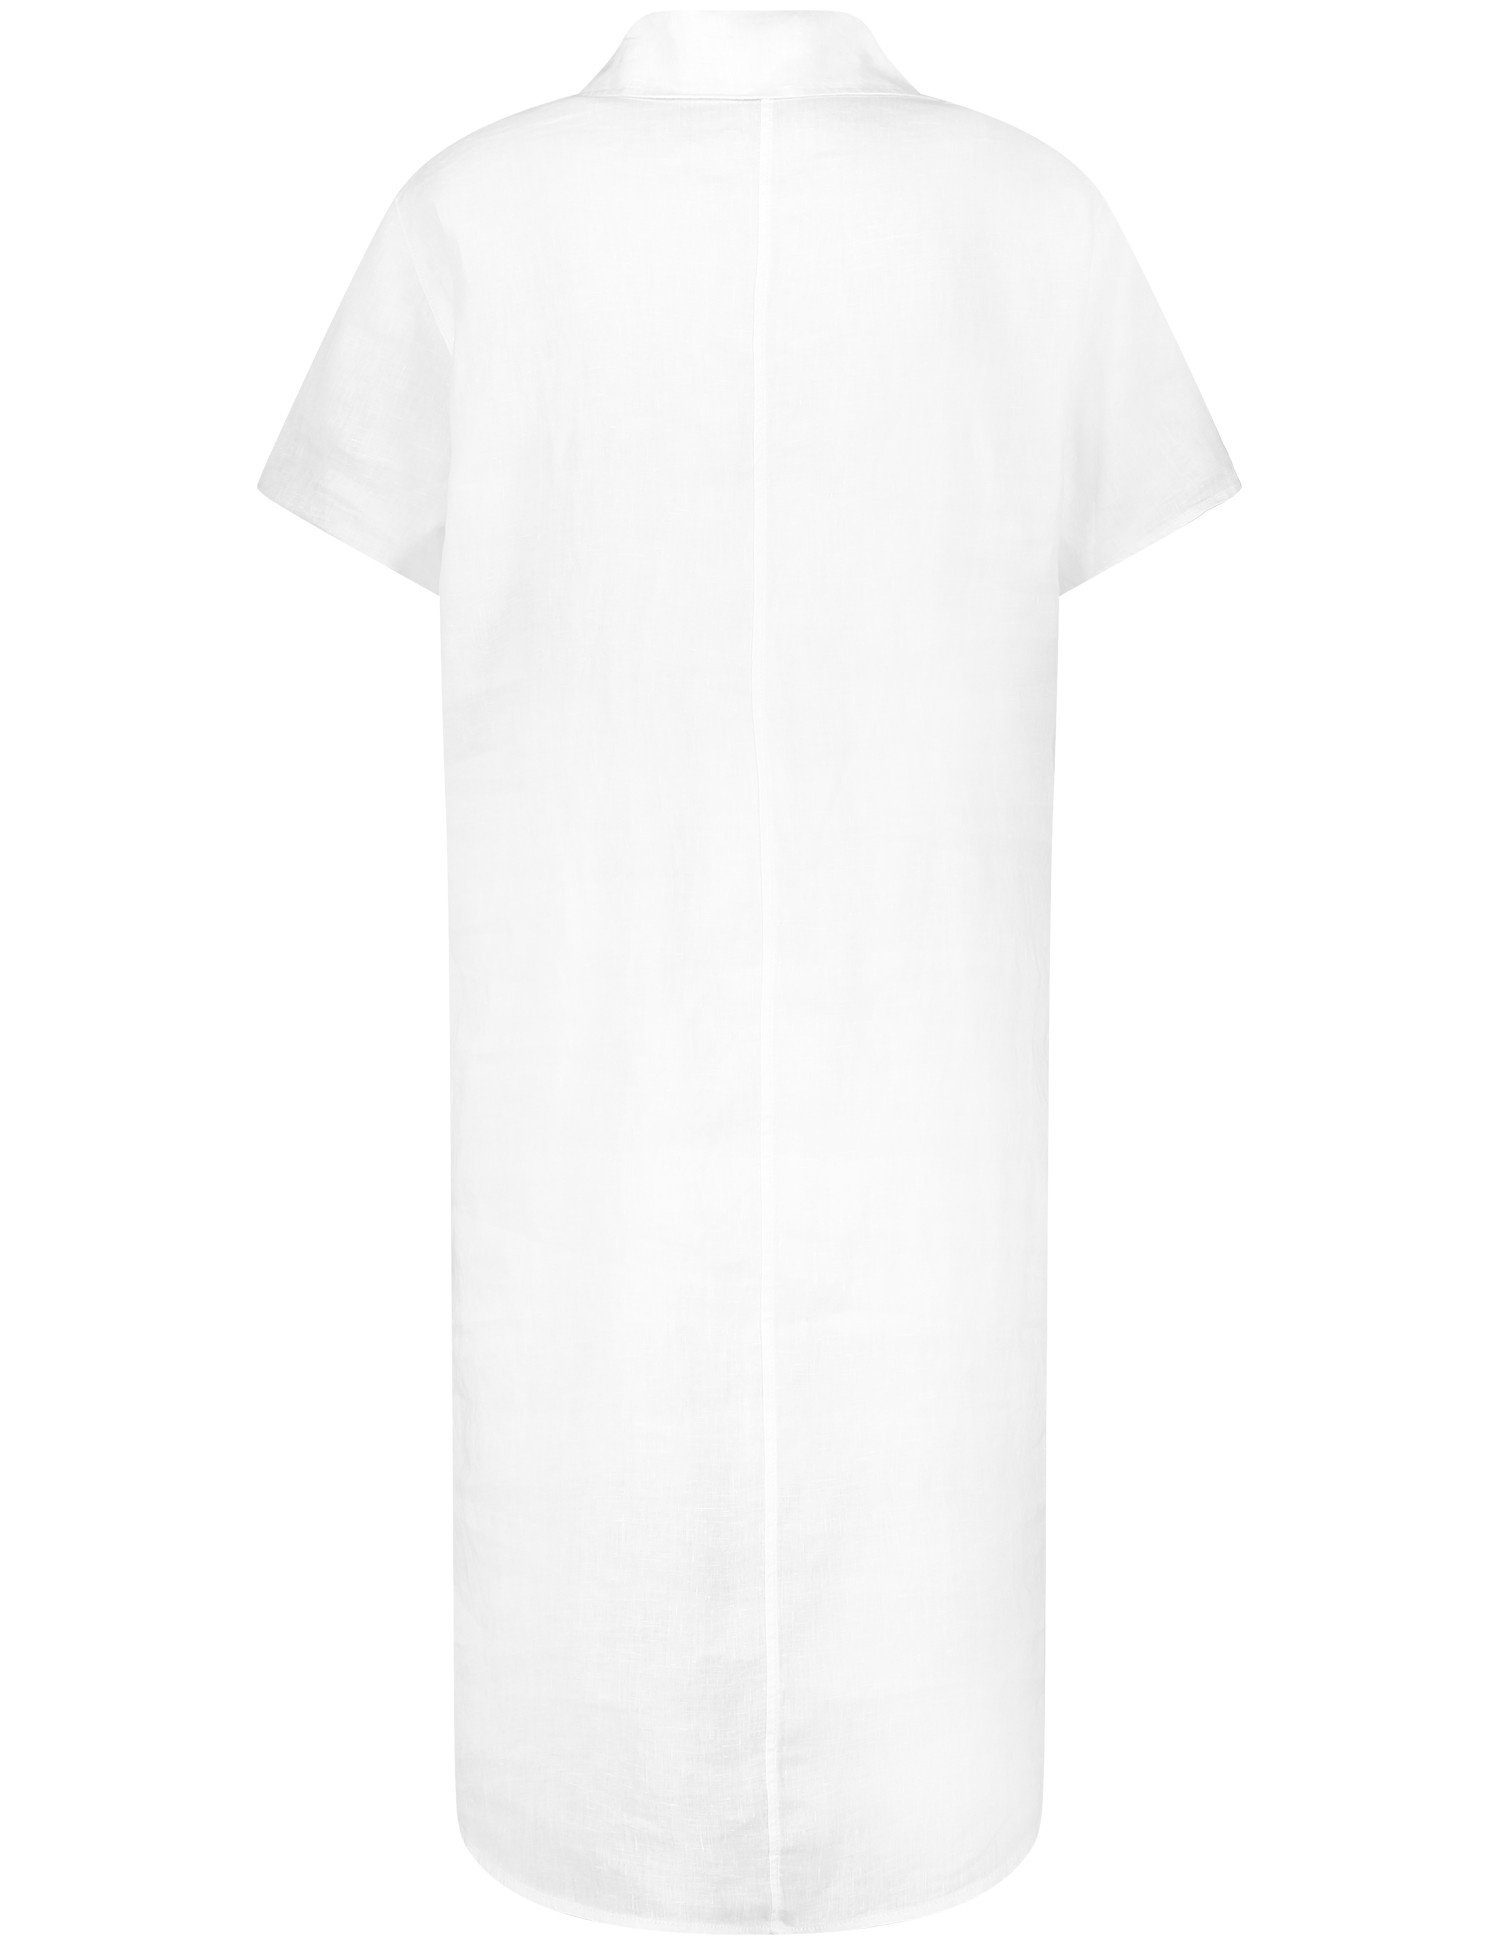 WEBER Blusenkleid weiß/weiß Midikleid aus GERRY Leinen